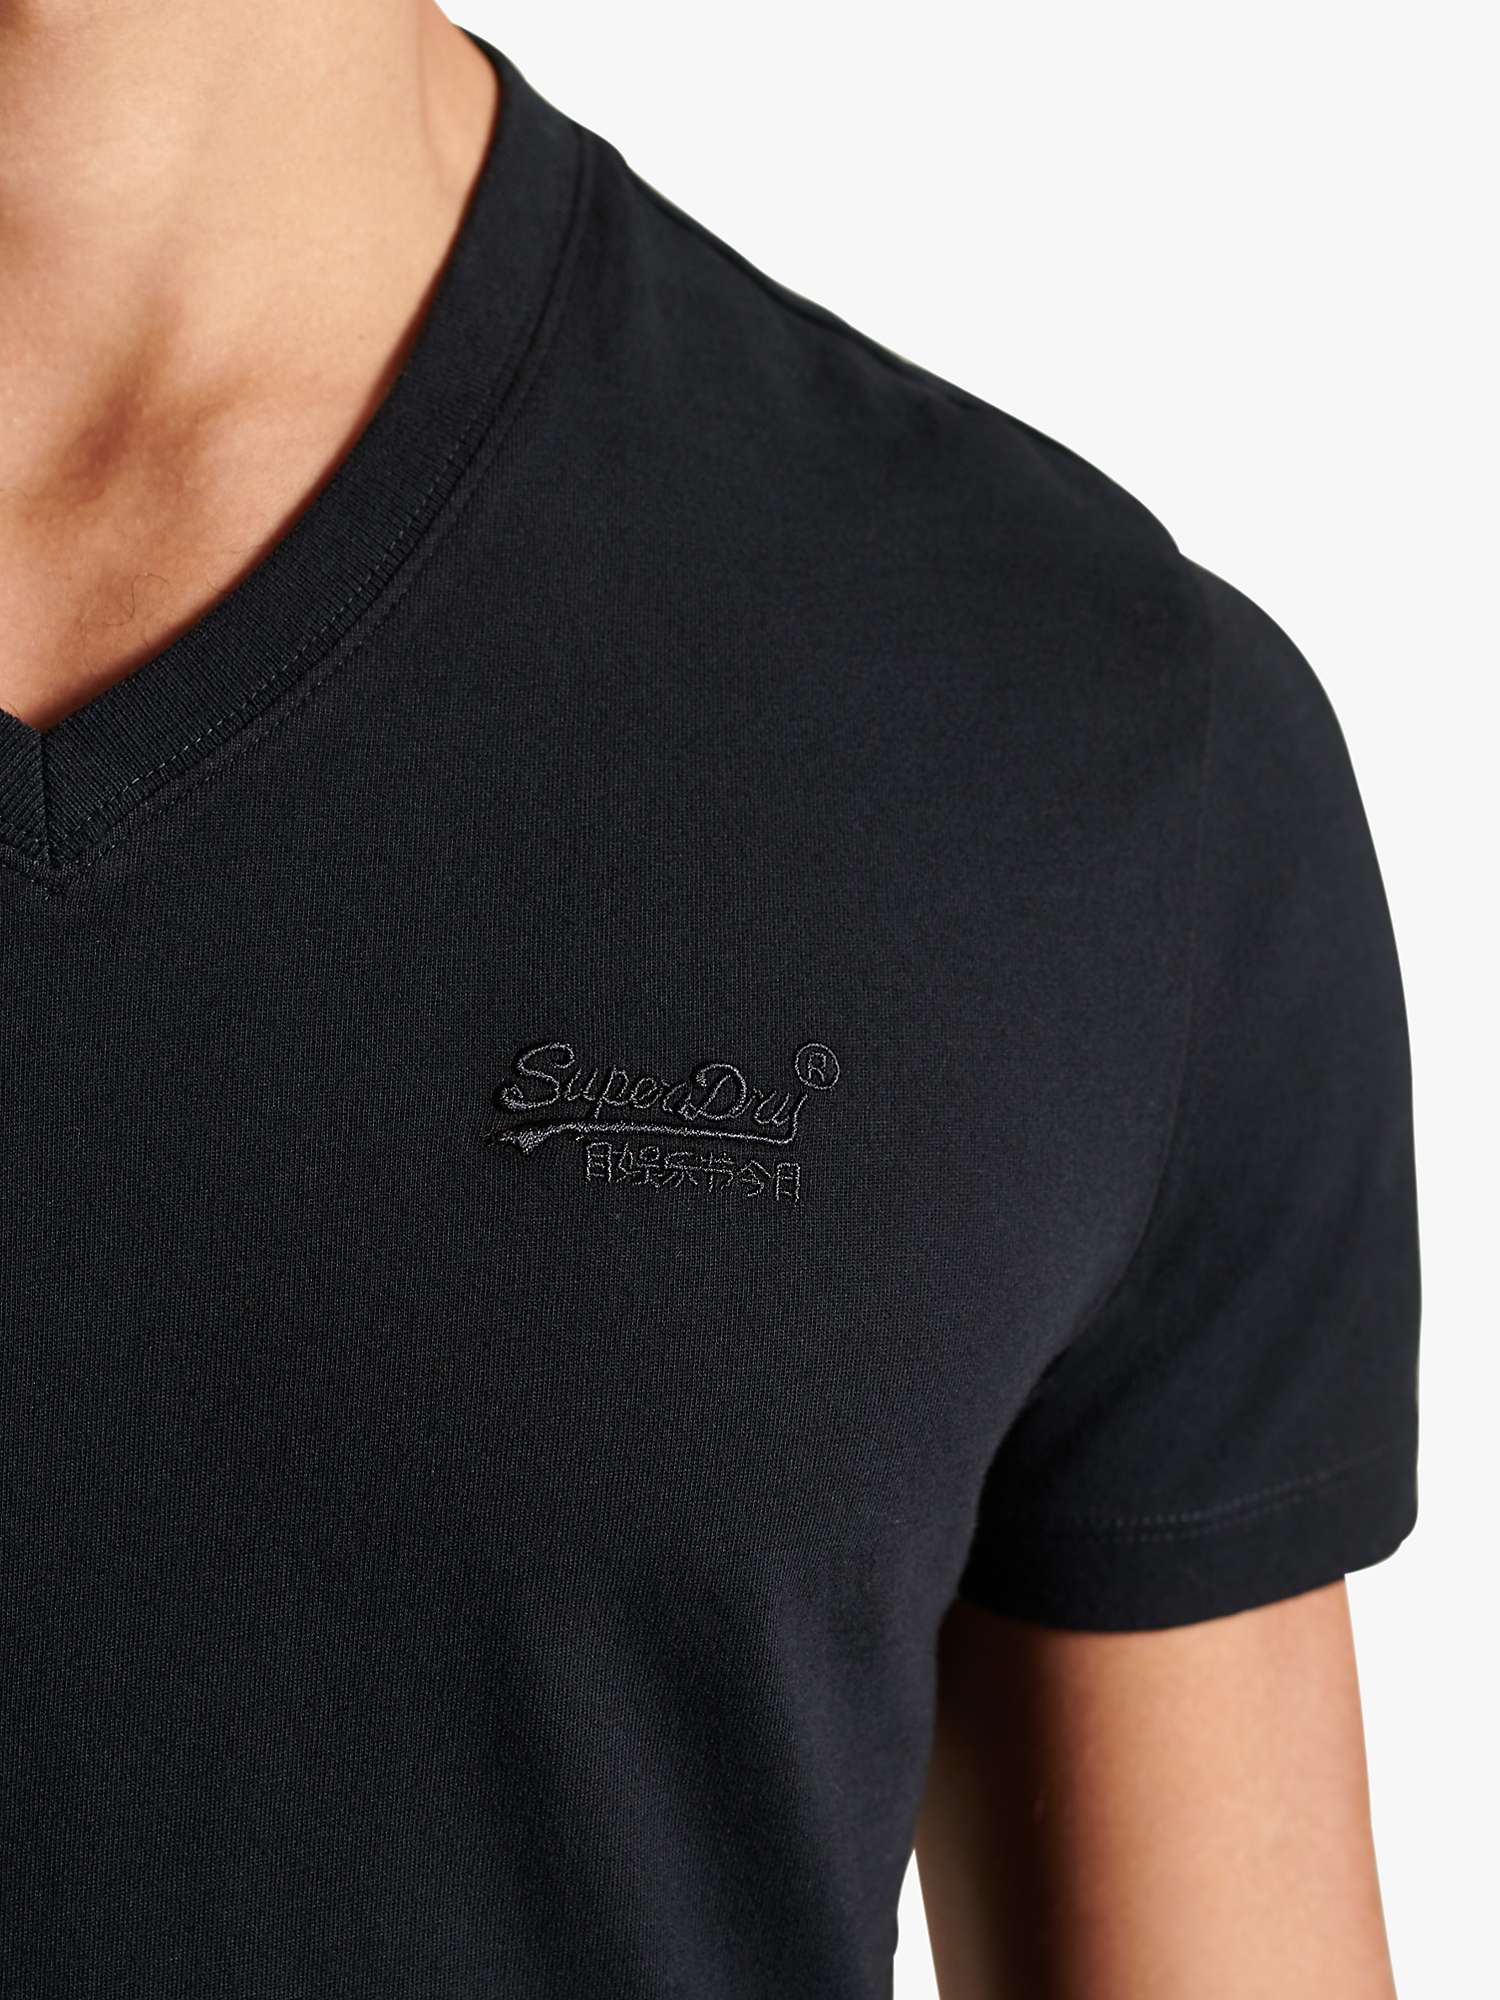 Buy Superdry Vintage V-Neck T-Shirt, Black Online at johnlewis.com